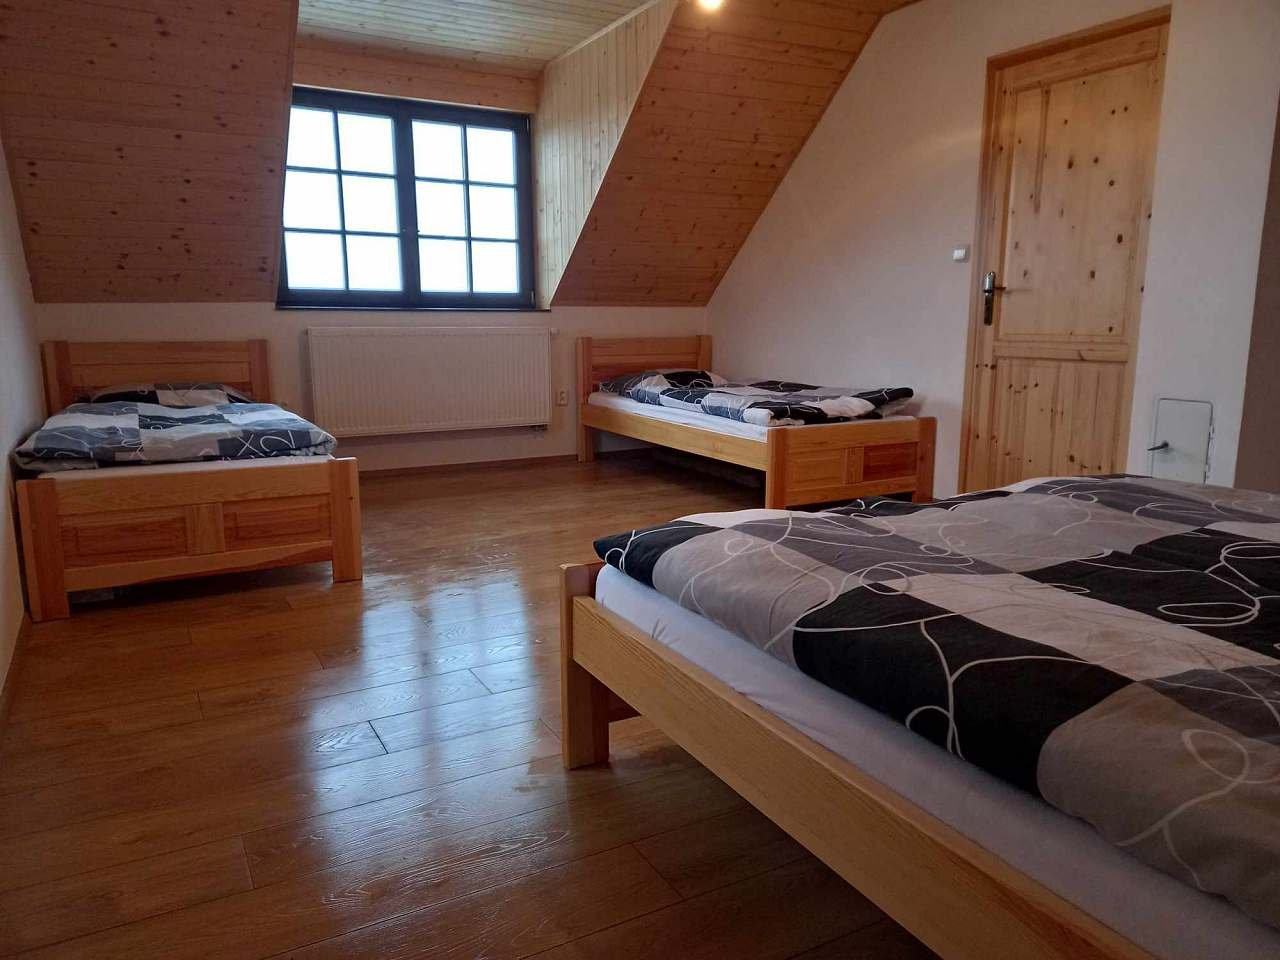 Cottage at Vyhlídka for rent Semily - Příkrý - Larger bedroom